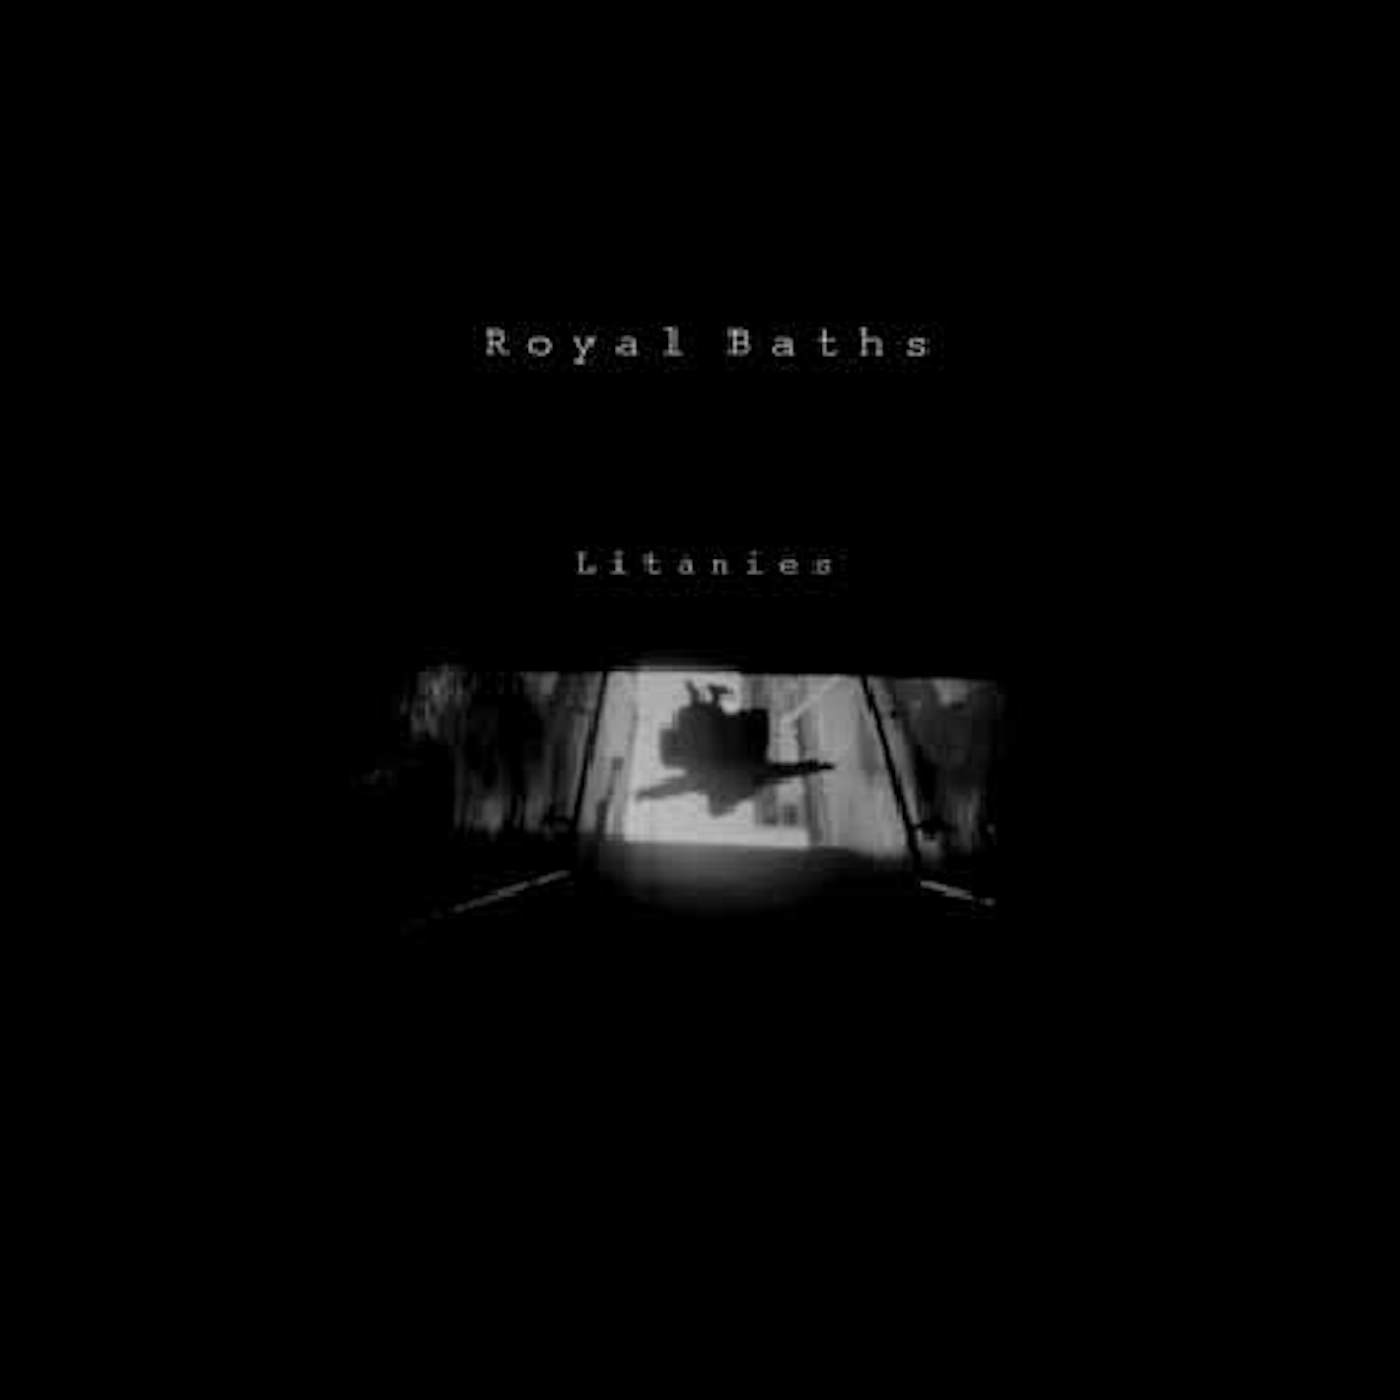 Royal Baths Litanies Vinyl Record